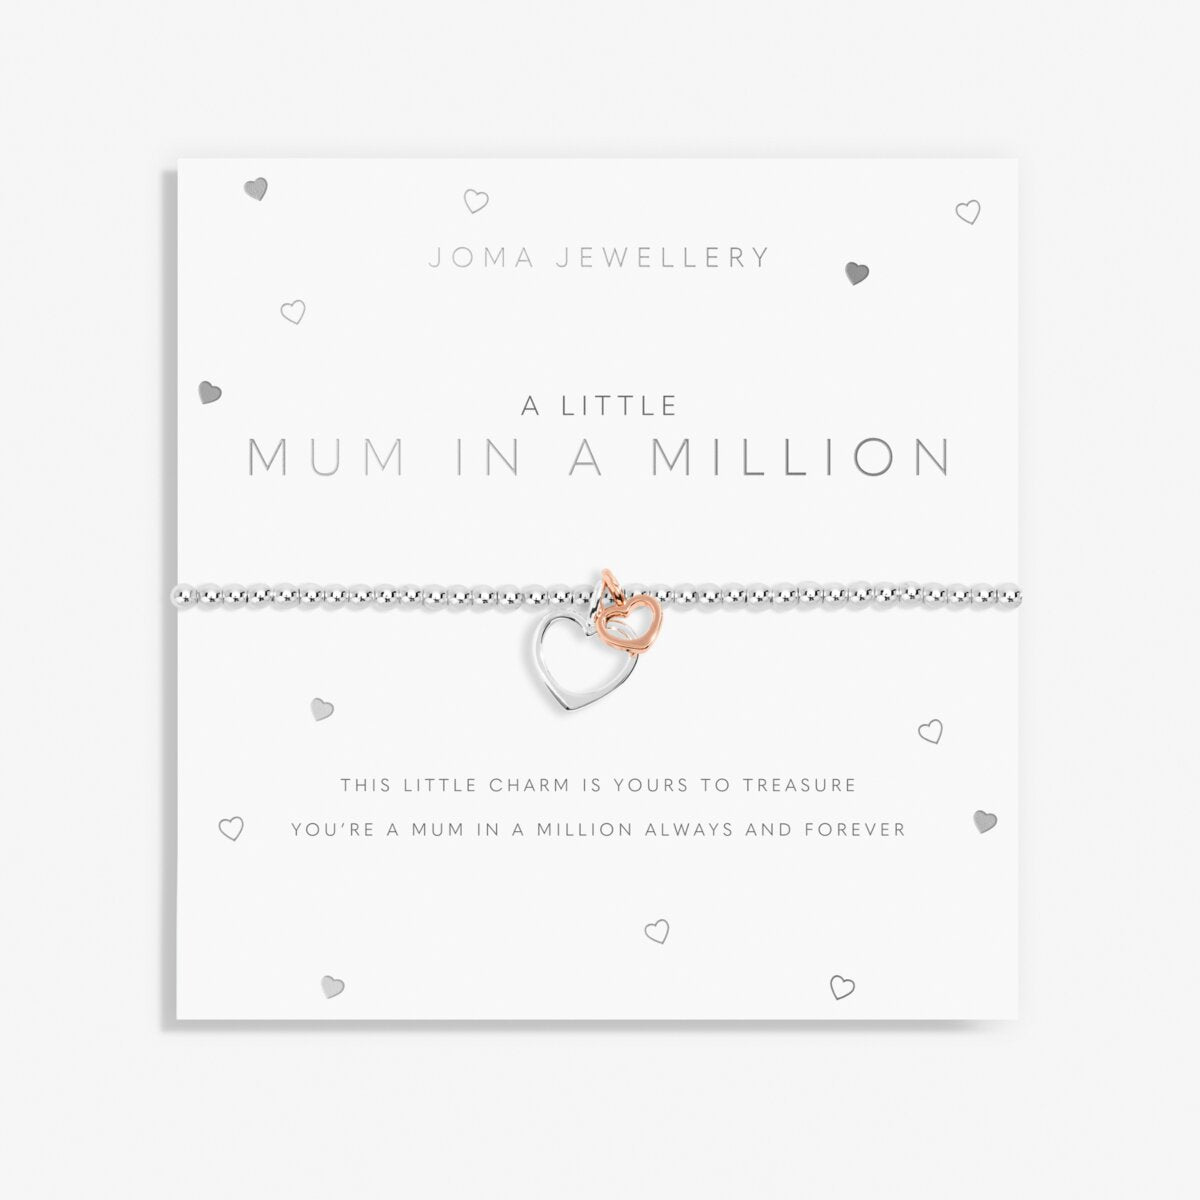 JOMA JEWELLERY | A LITTLE | MUM IN A MILLION BRACELET